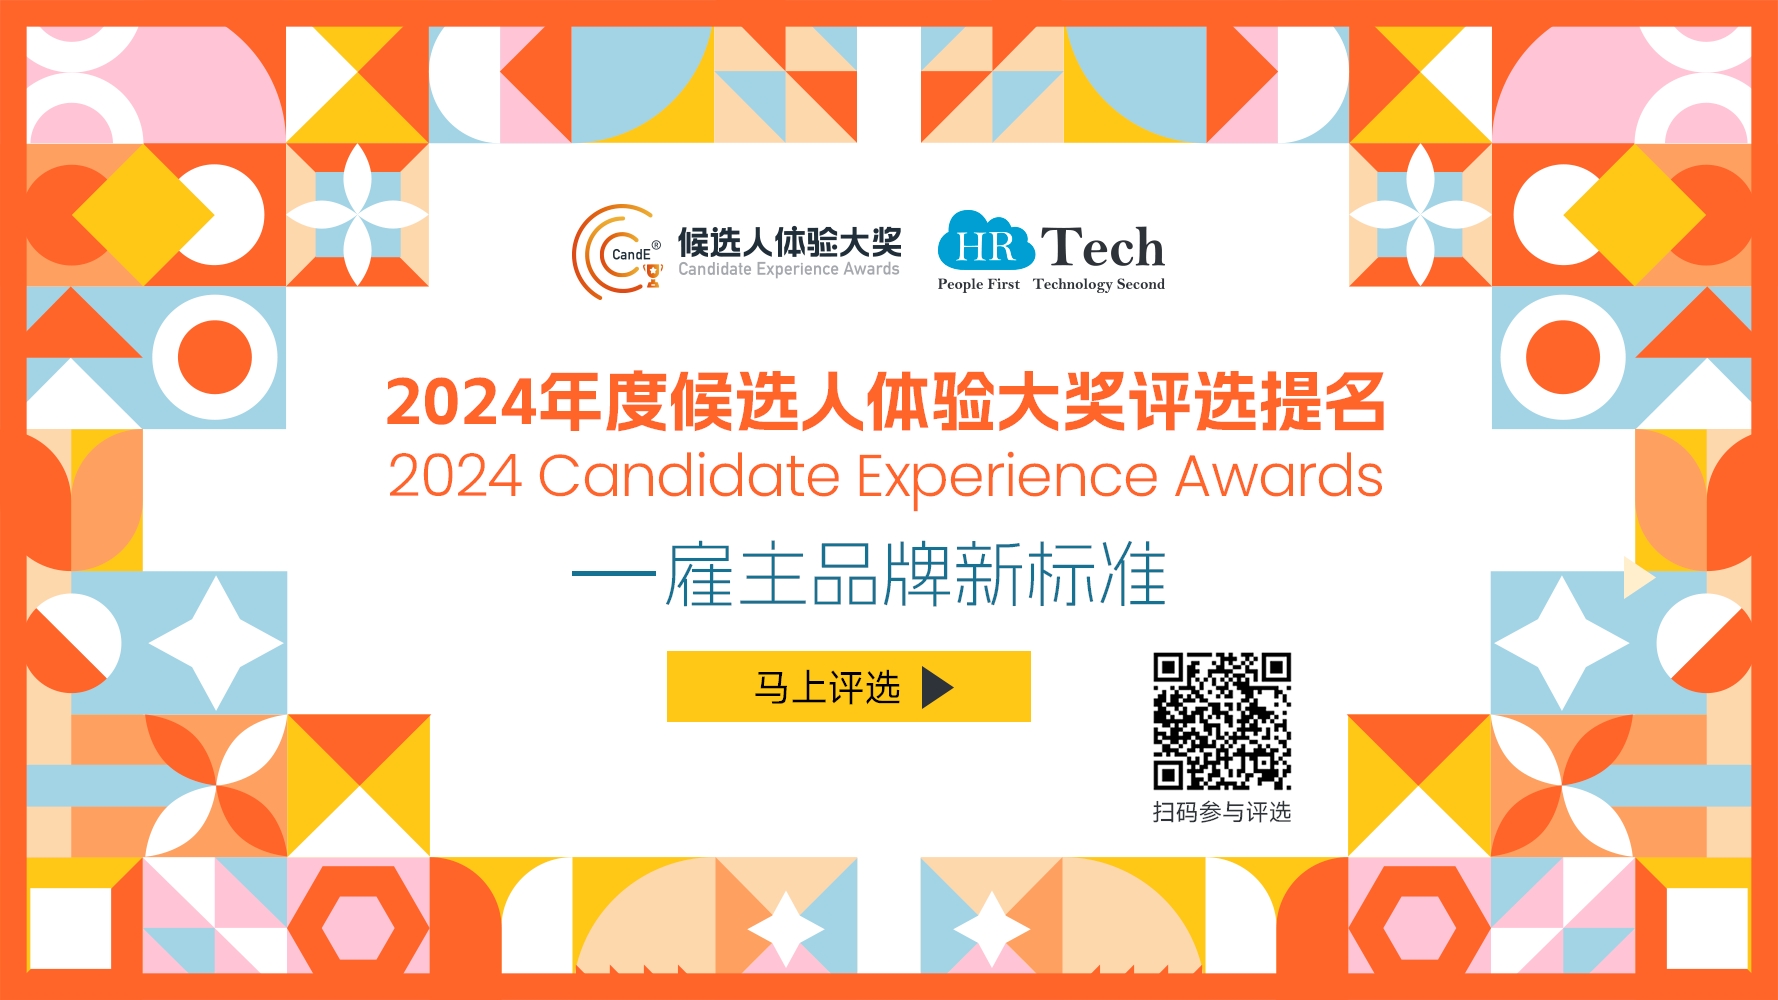 【评选】雇主品牌新标准——2024候选人体验大奖（CandE® Awards）评选提名启动，马上参与提名！